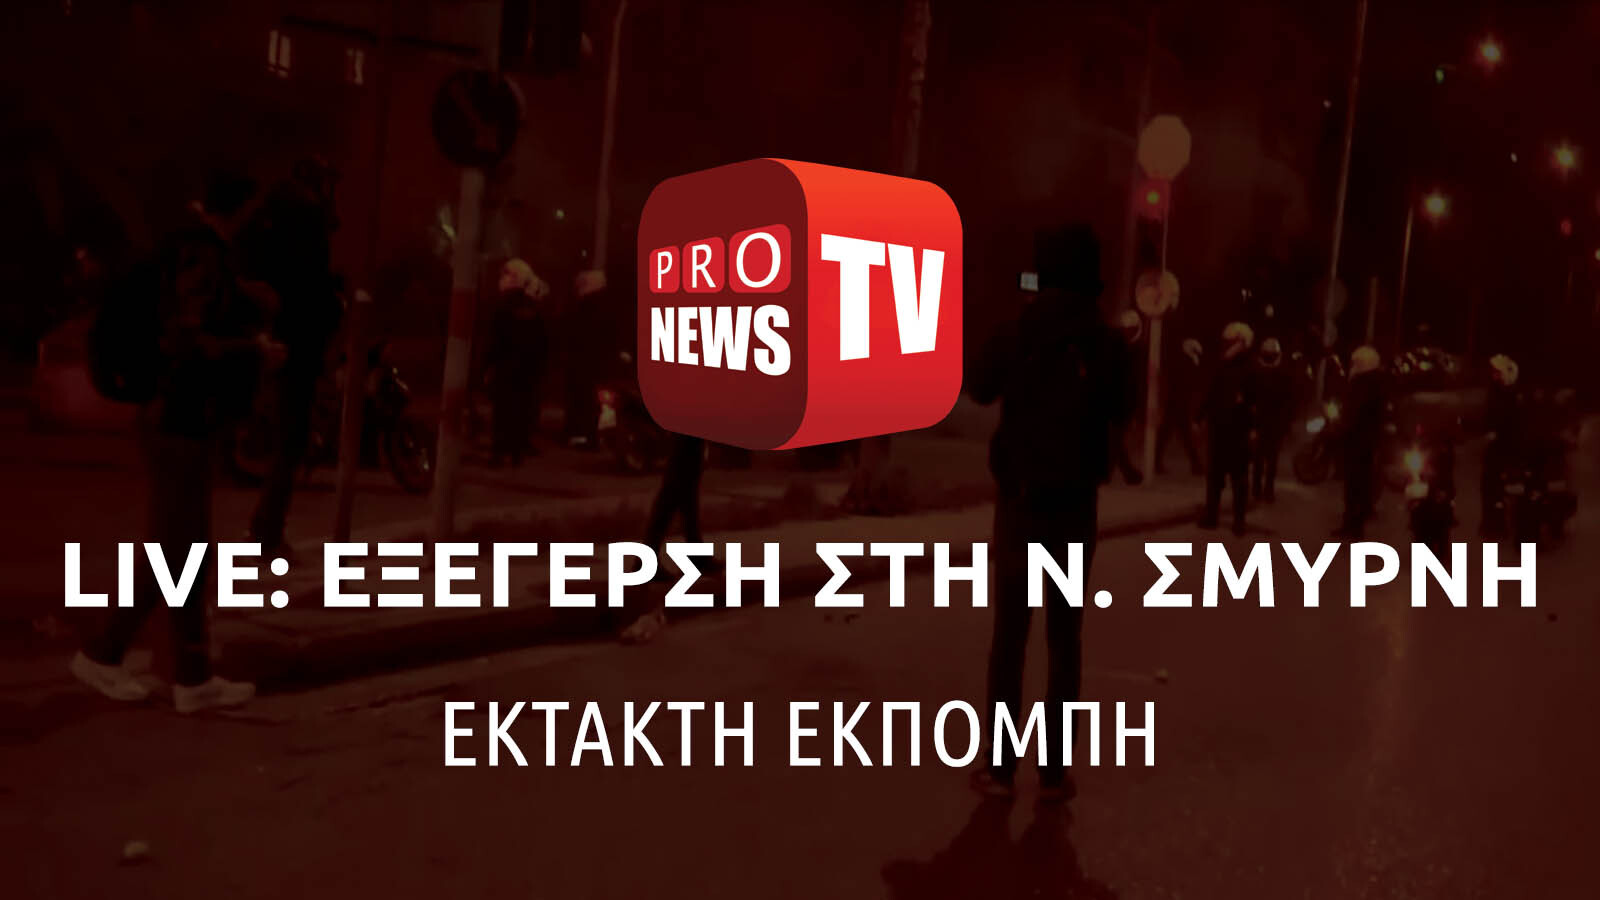 Έκτακτη εκπομπή του pronews.gr για τα δραματικά γεγονότα (upd)